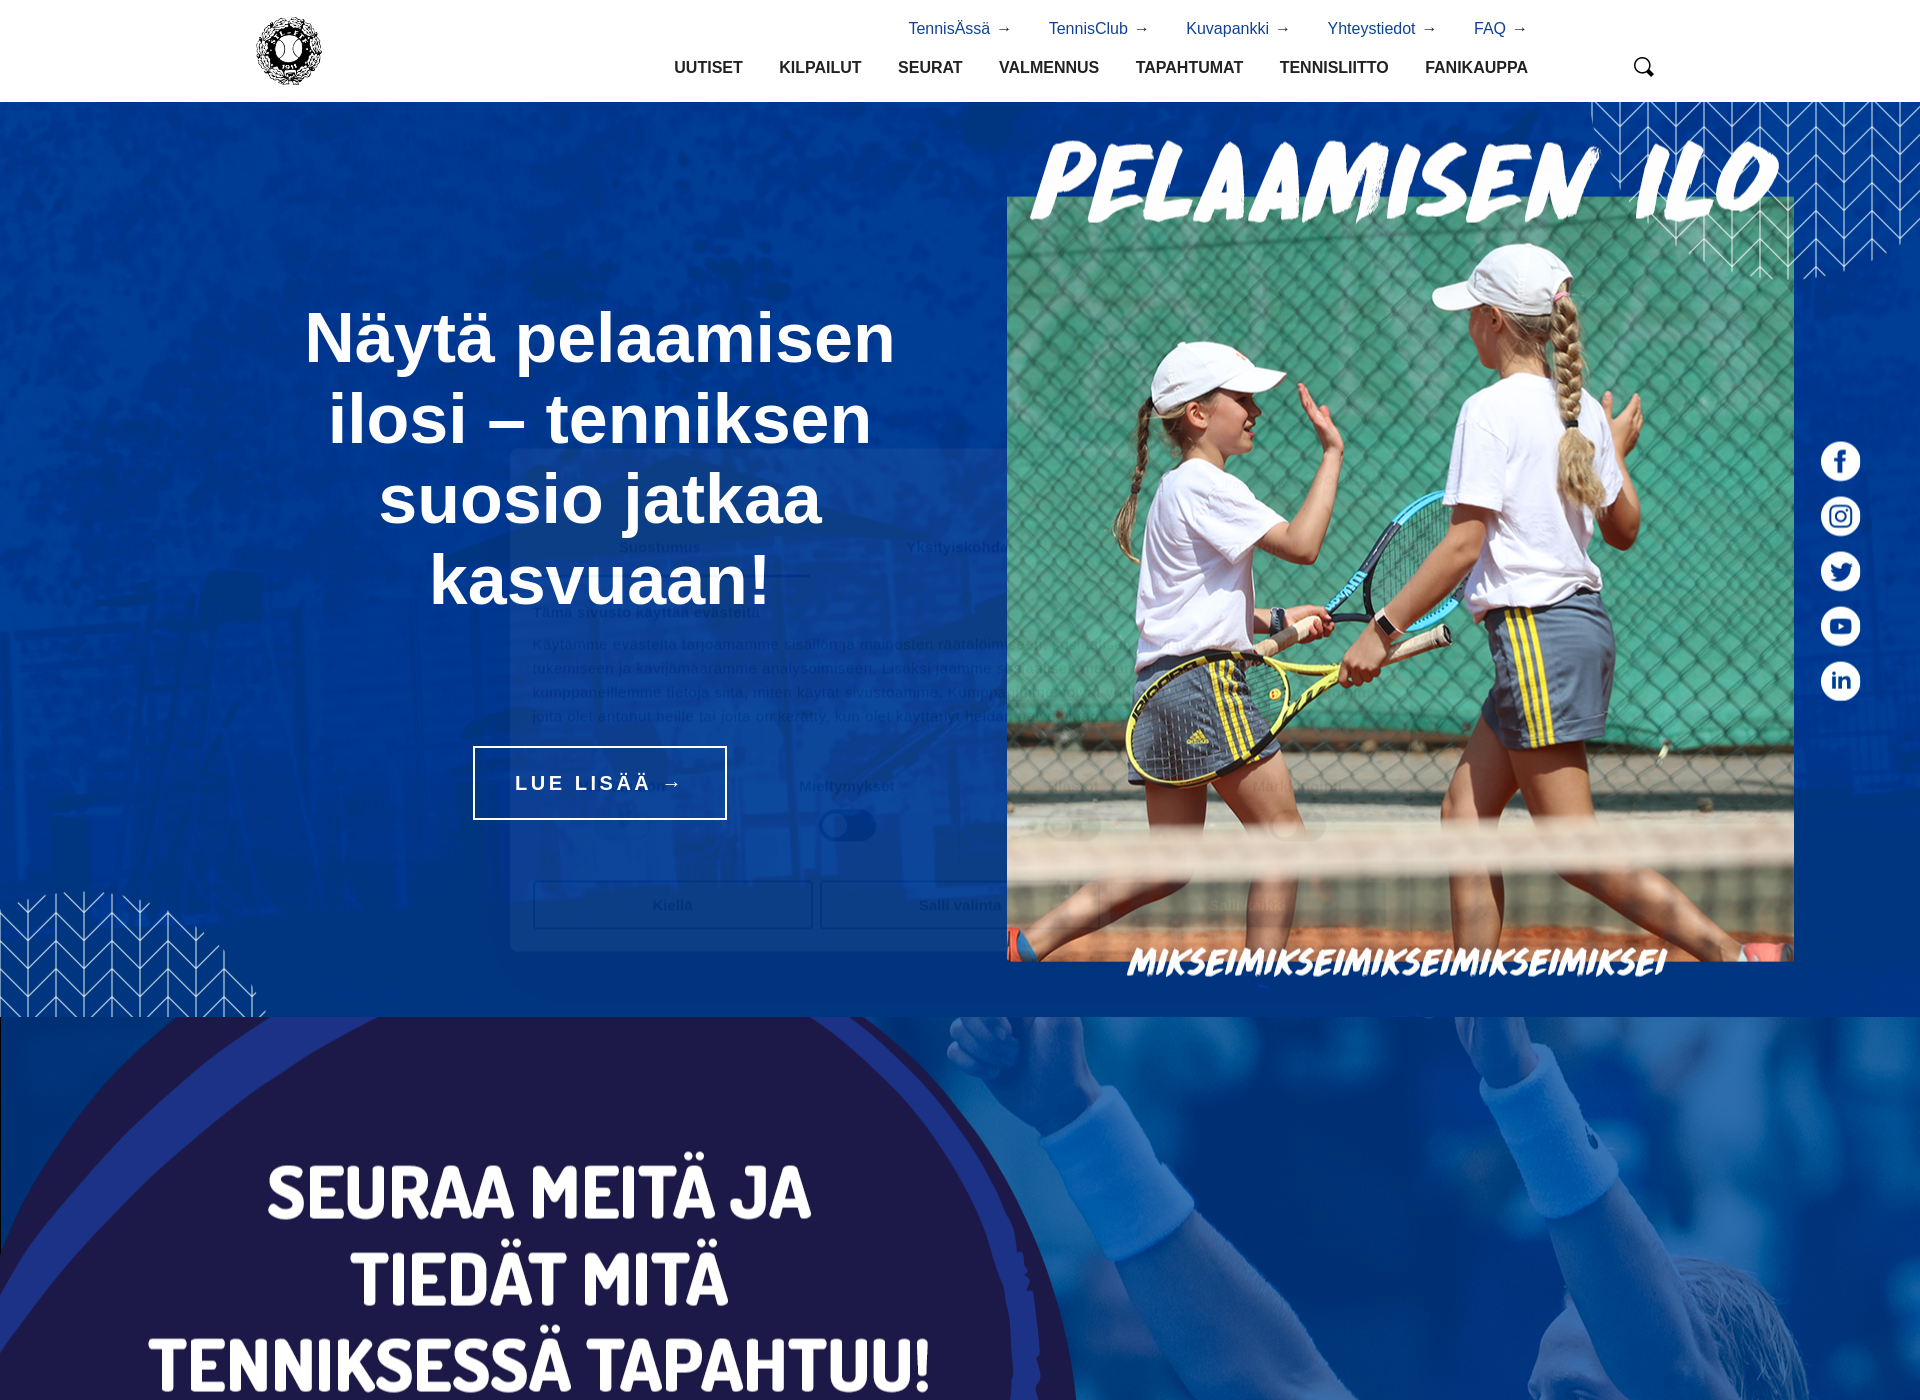 Näyttökuva tennis.fi